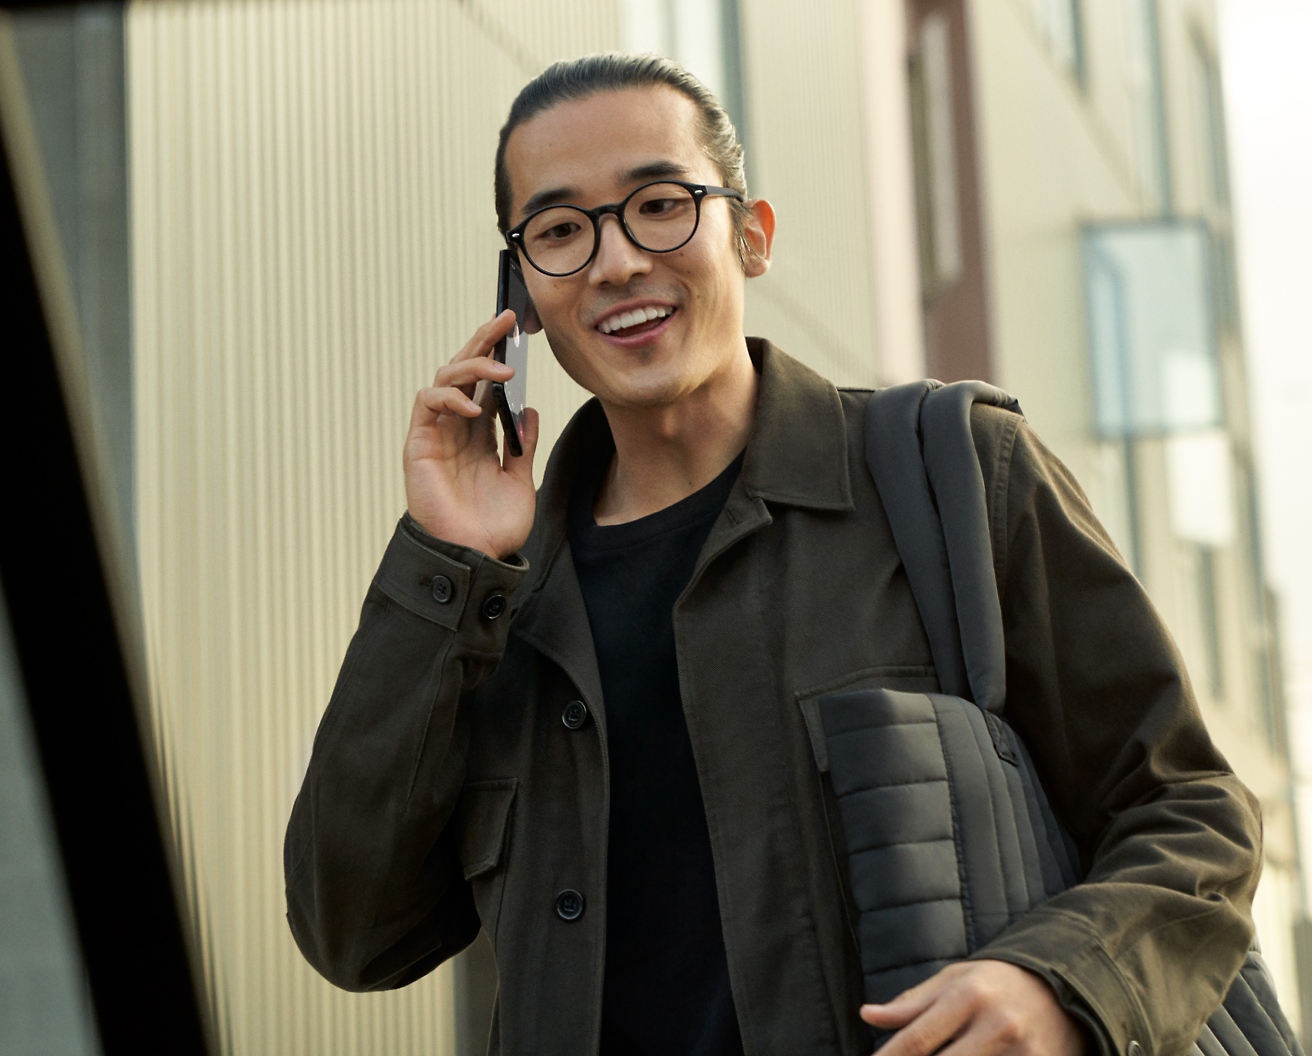 En person med briller, der holder en mobiltelefon og smiler